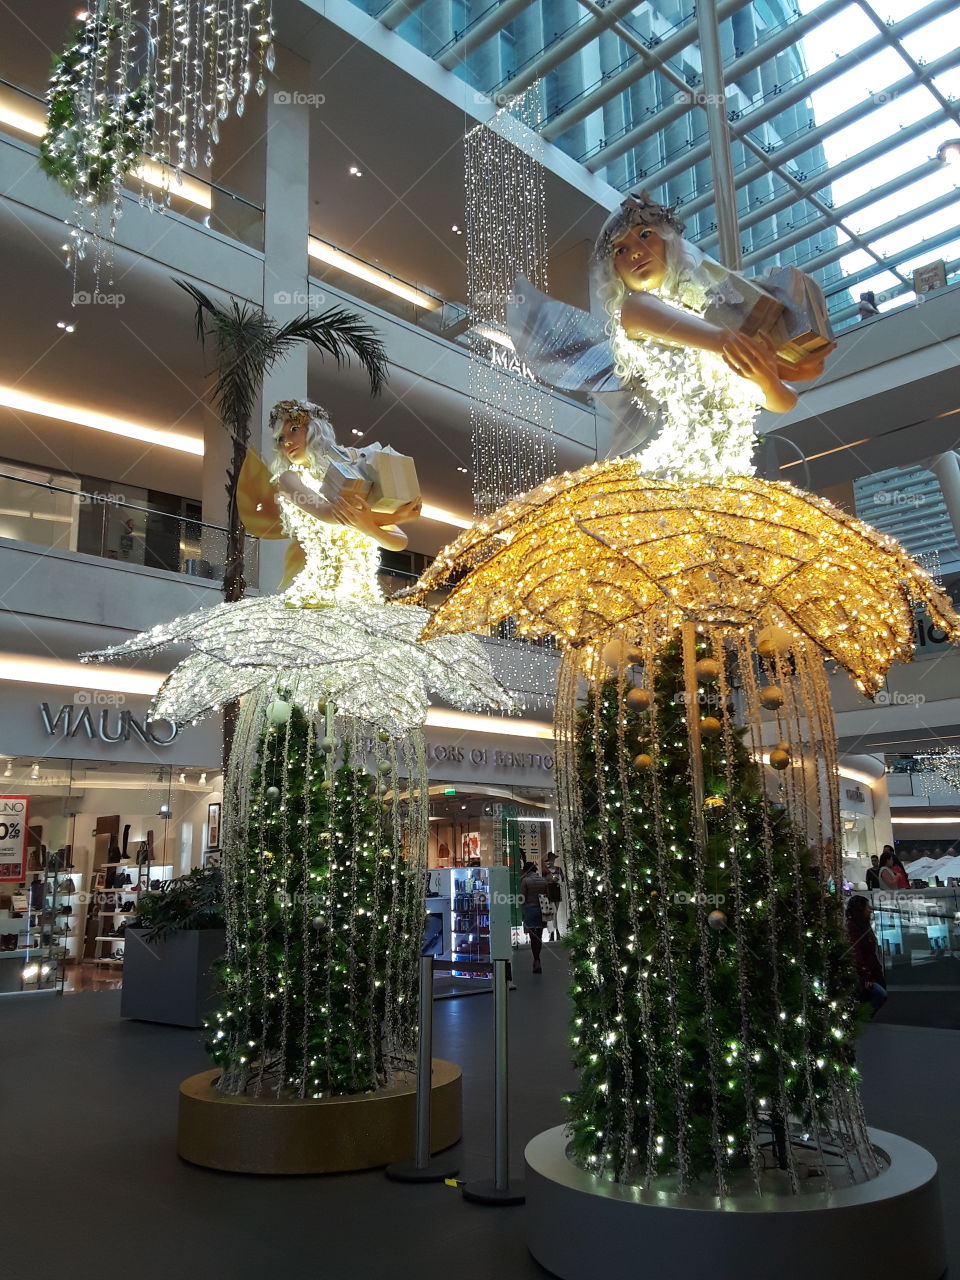 hadas con luces focos... serie.. con alas, cantaros, volando, flotando, navidad, mujeres,  vestido de luces. navideño. festividad